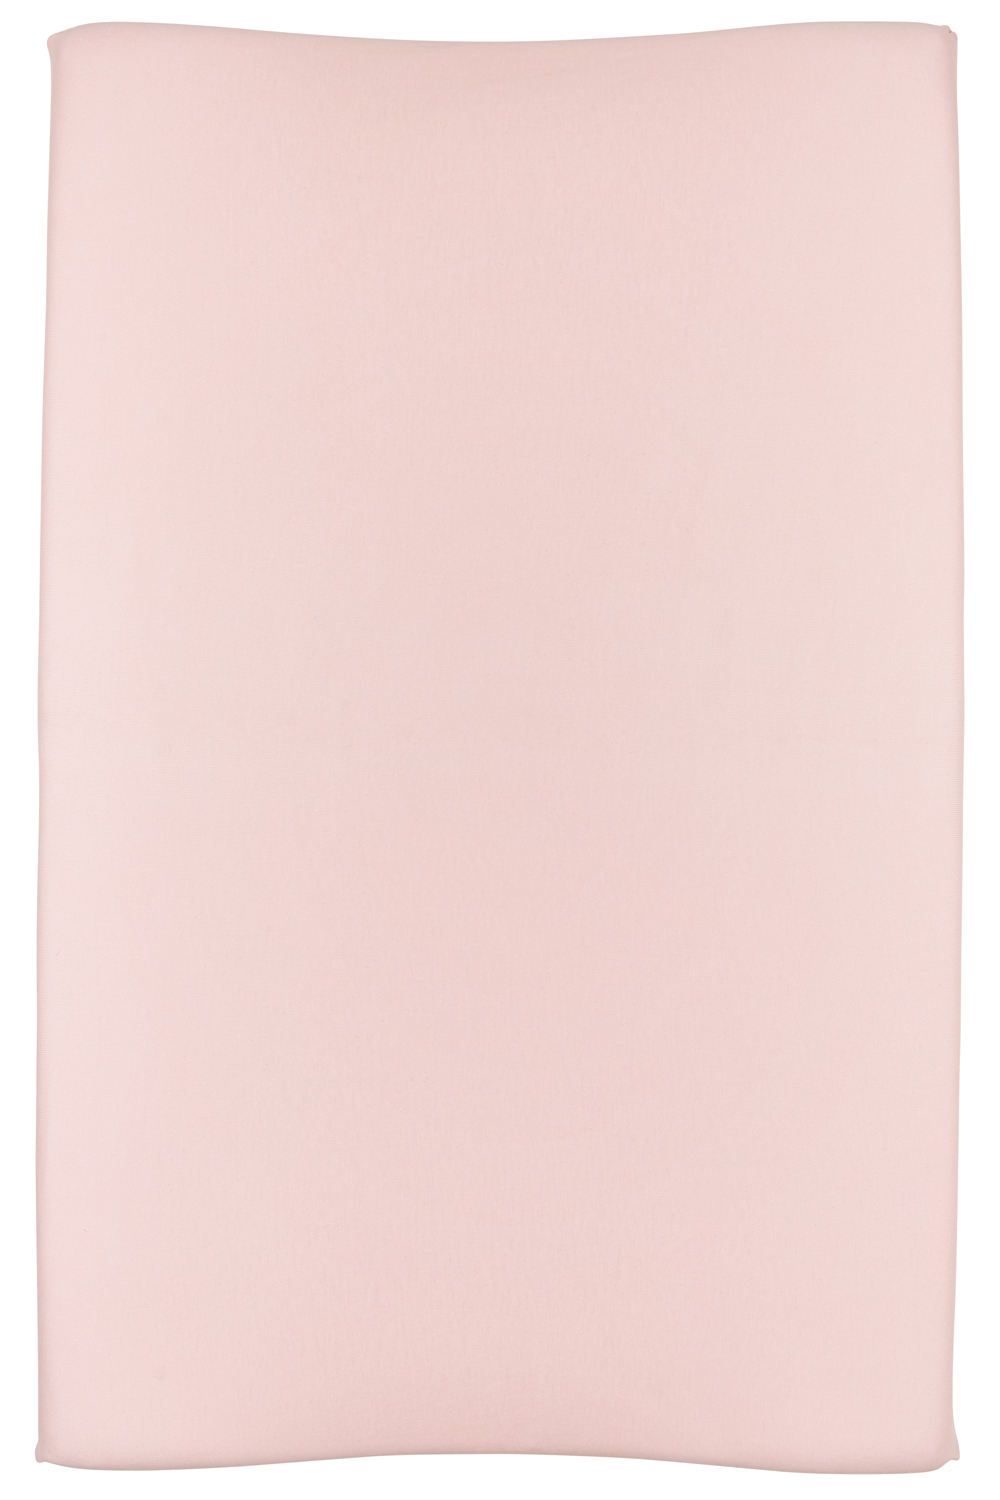 Aankleedkussenhoes Basic Jersey - Lichtroze - 50x70cm